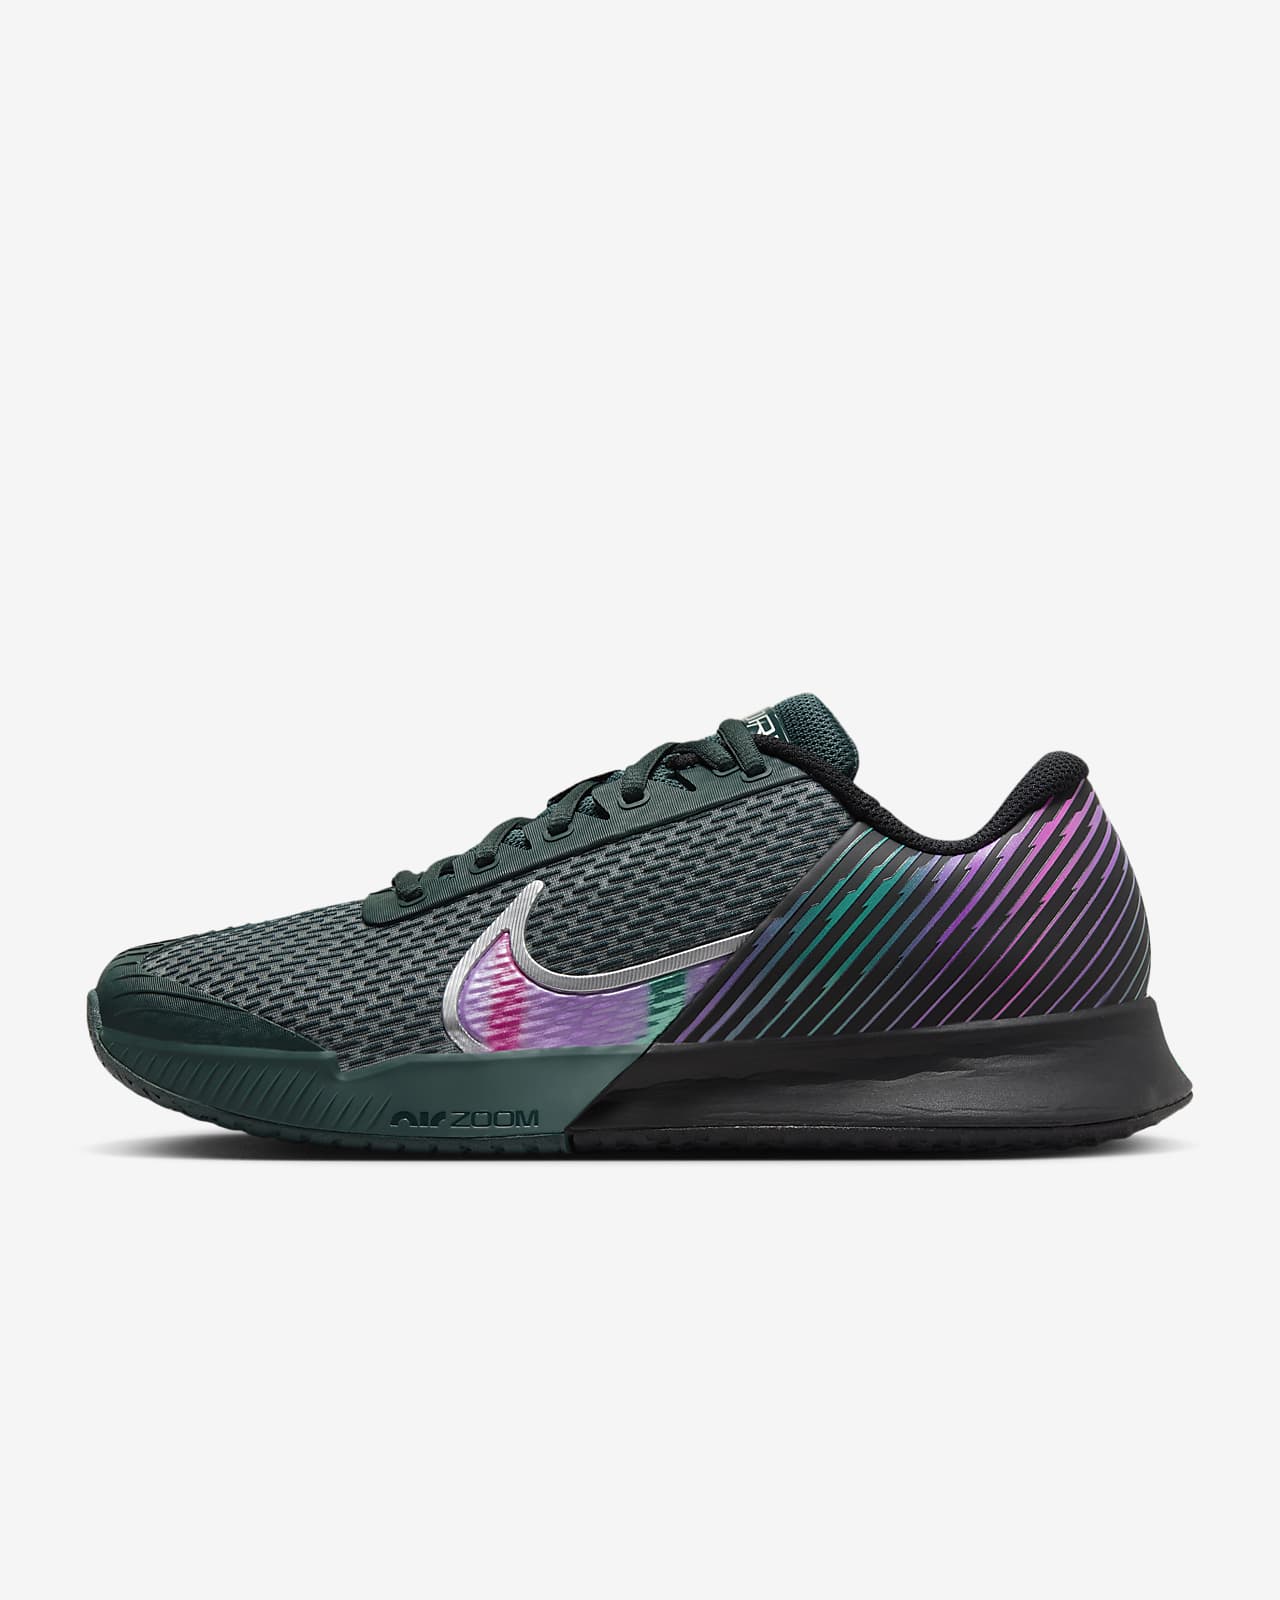 NikeCourt Air Zoom Vapor Pro 2 Premium Men's Hard Court Tennis Shoes